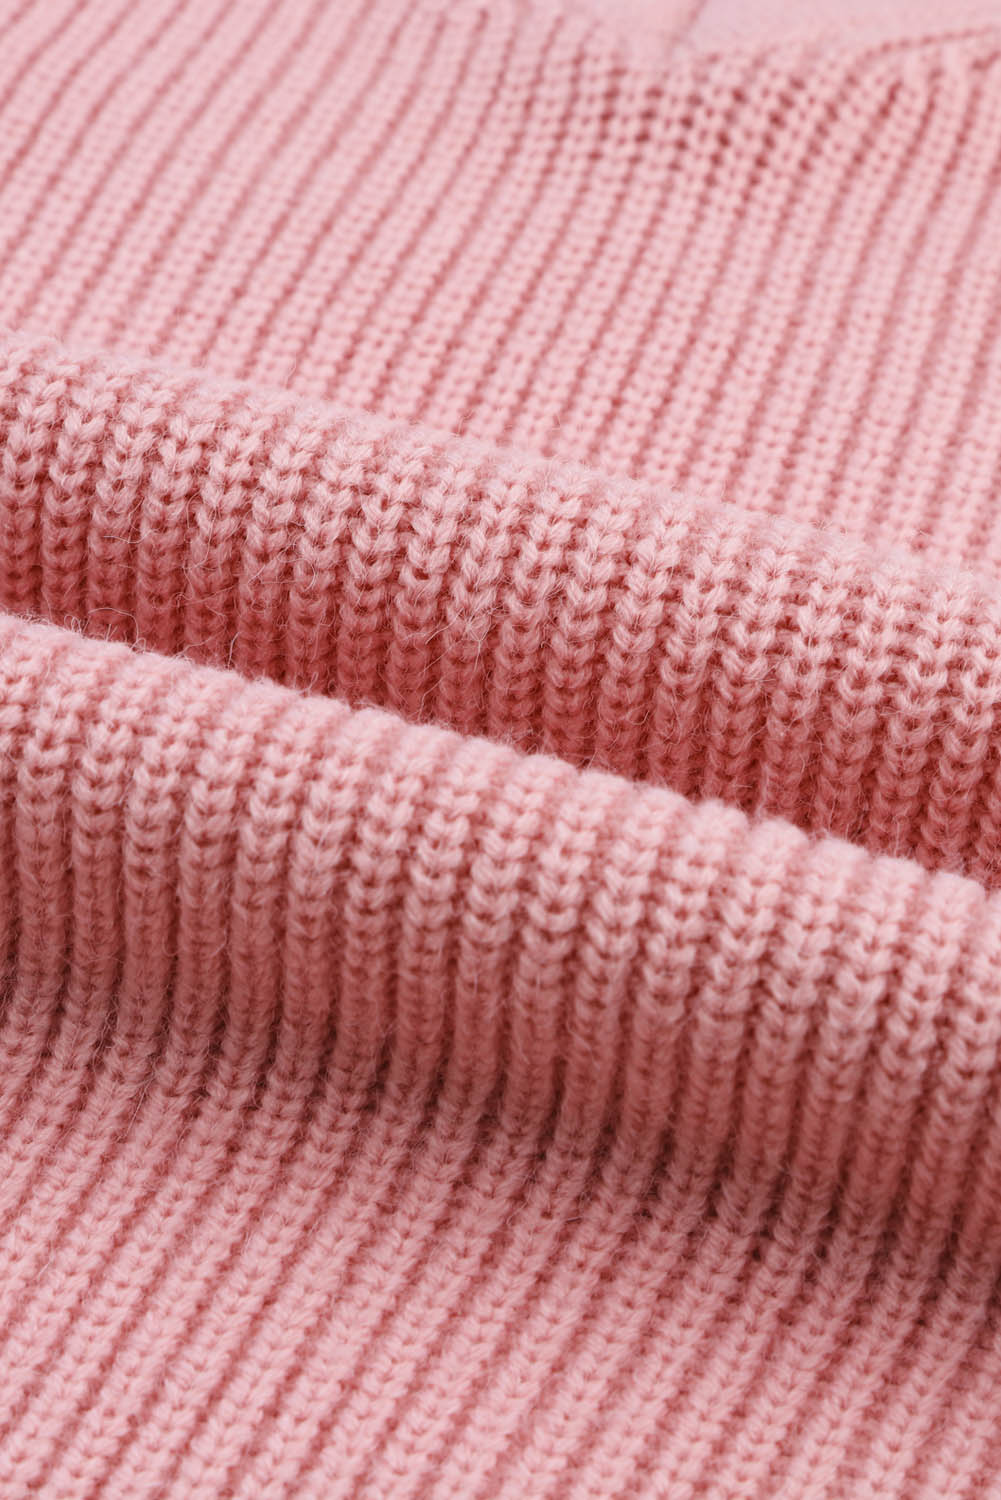 Rožnat pleten pulover z v-izrezom in spuščenimi rameni